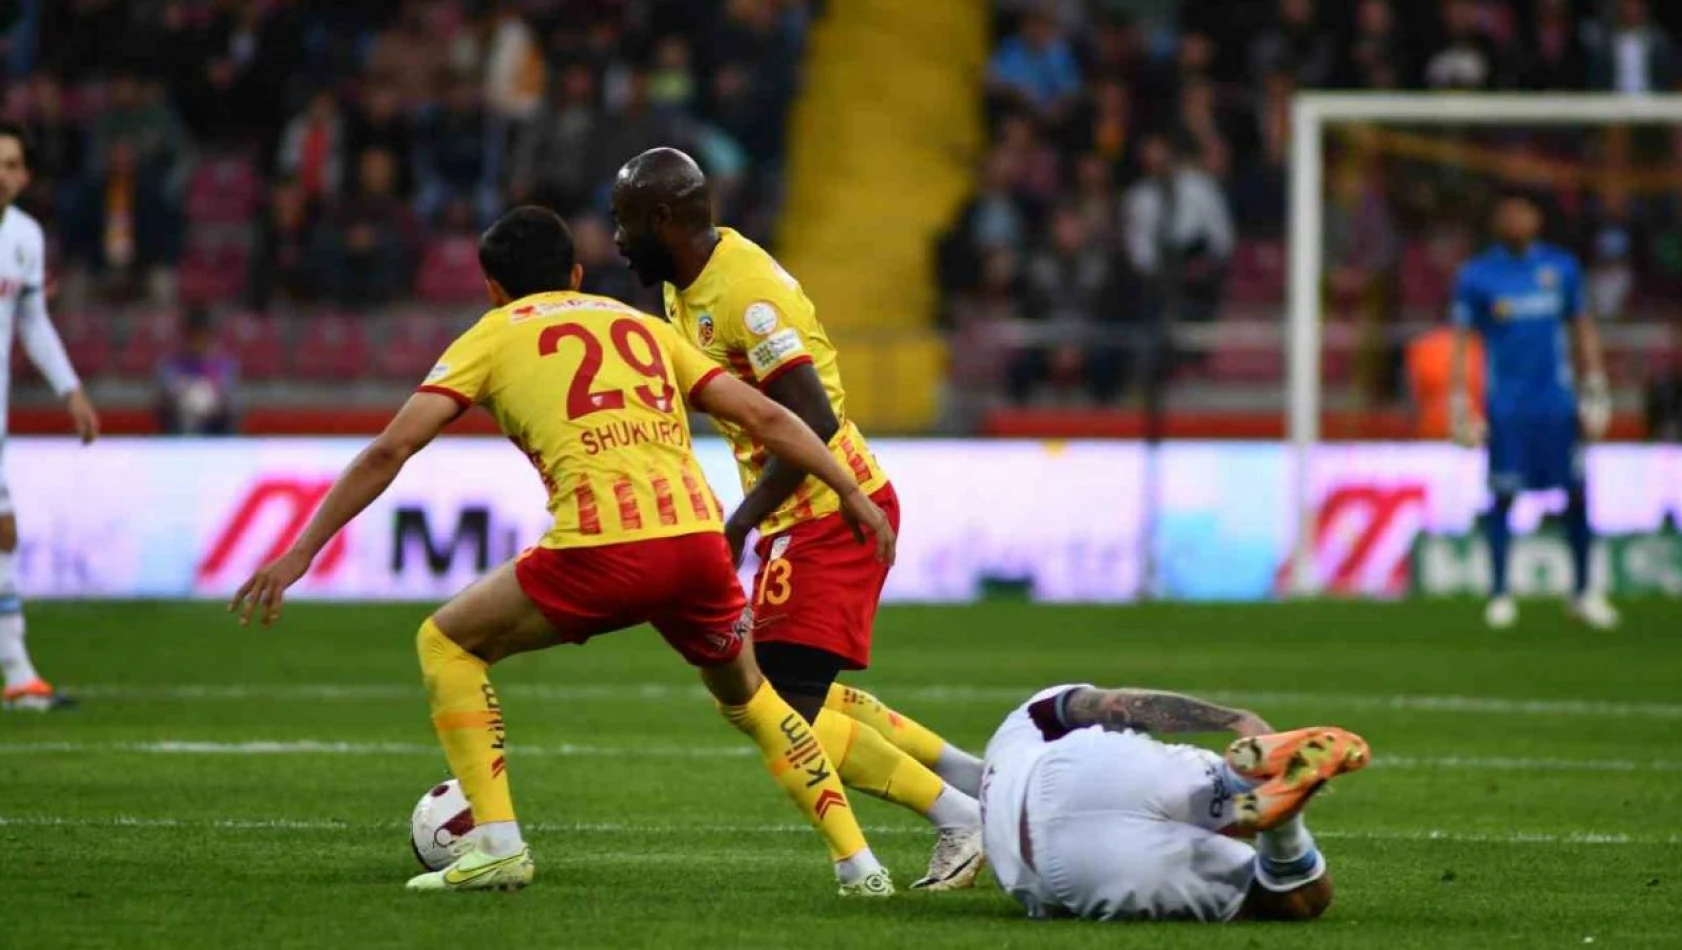 Kayserispor Trabzonspor maçında ilk yarı sona erdi - Trabzonspor 1-0 önde!